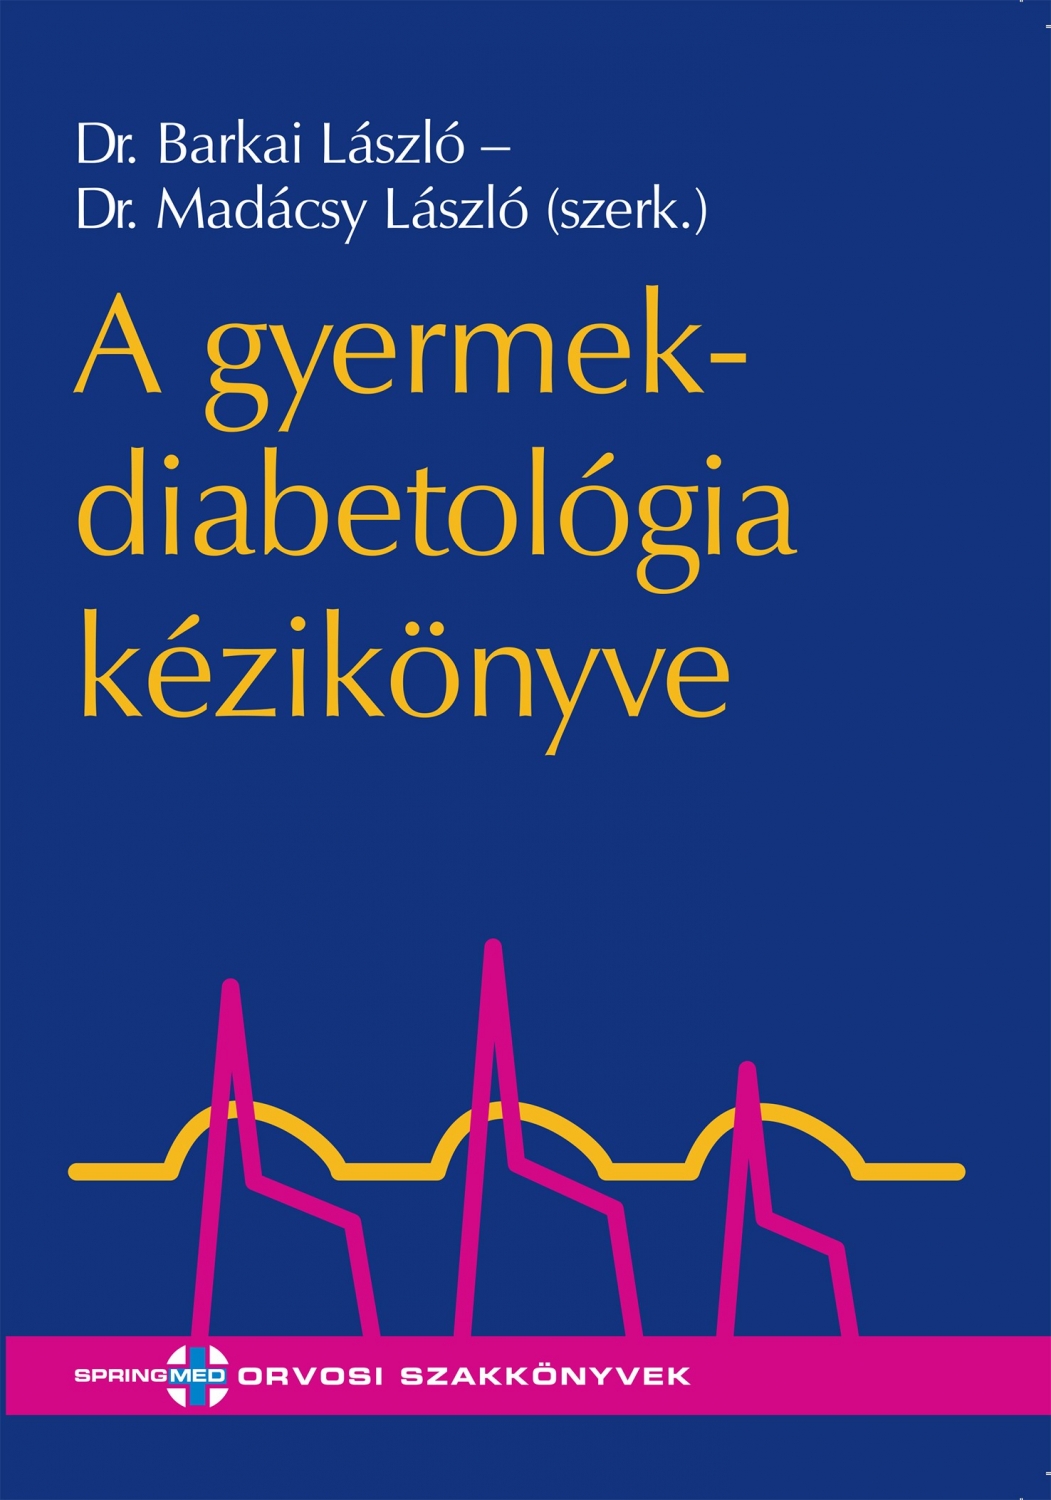 algoritmus diabetes mellitusban szenvedő betegek kezelésére)